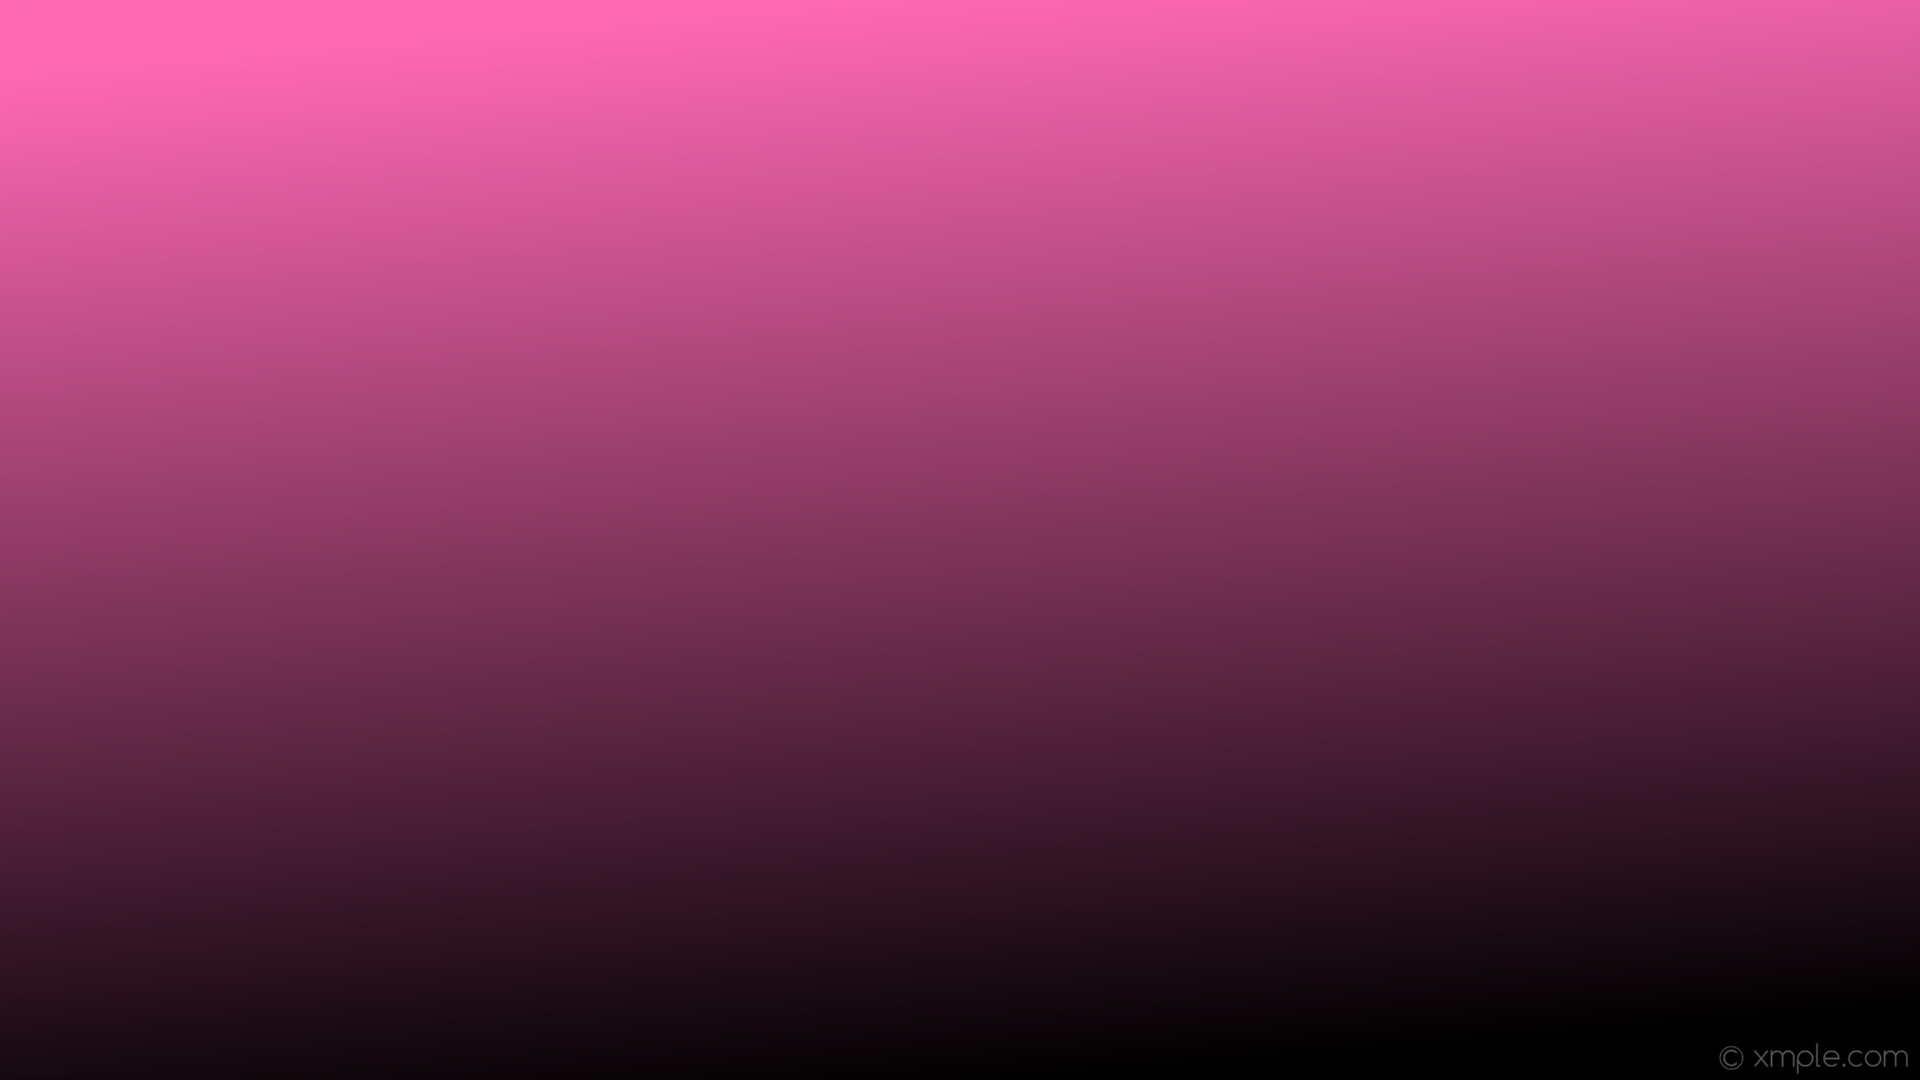 1920x1080 wallpaper black pink gradient linear hot pink #ff69b4 #000000 105Â°